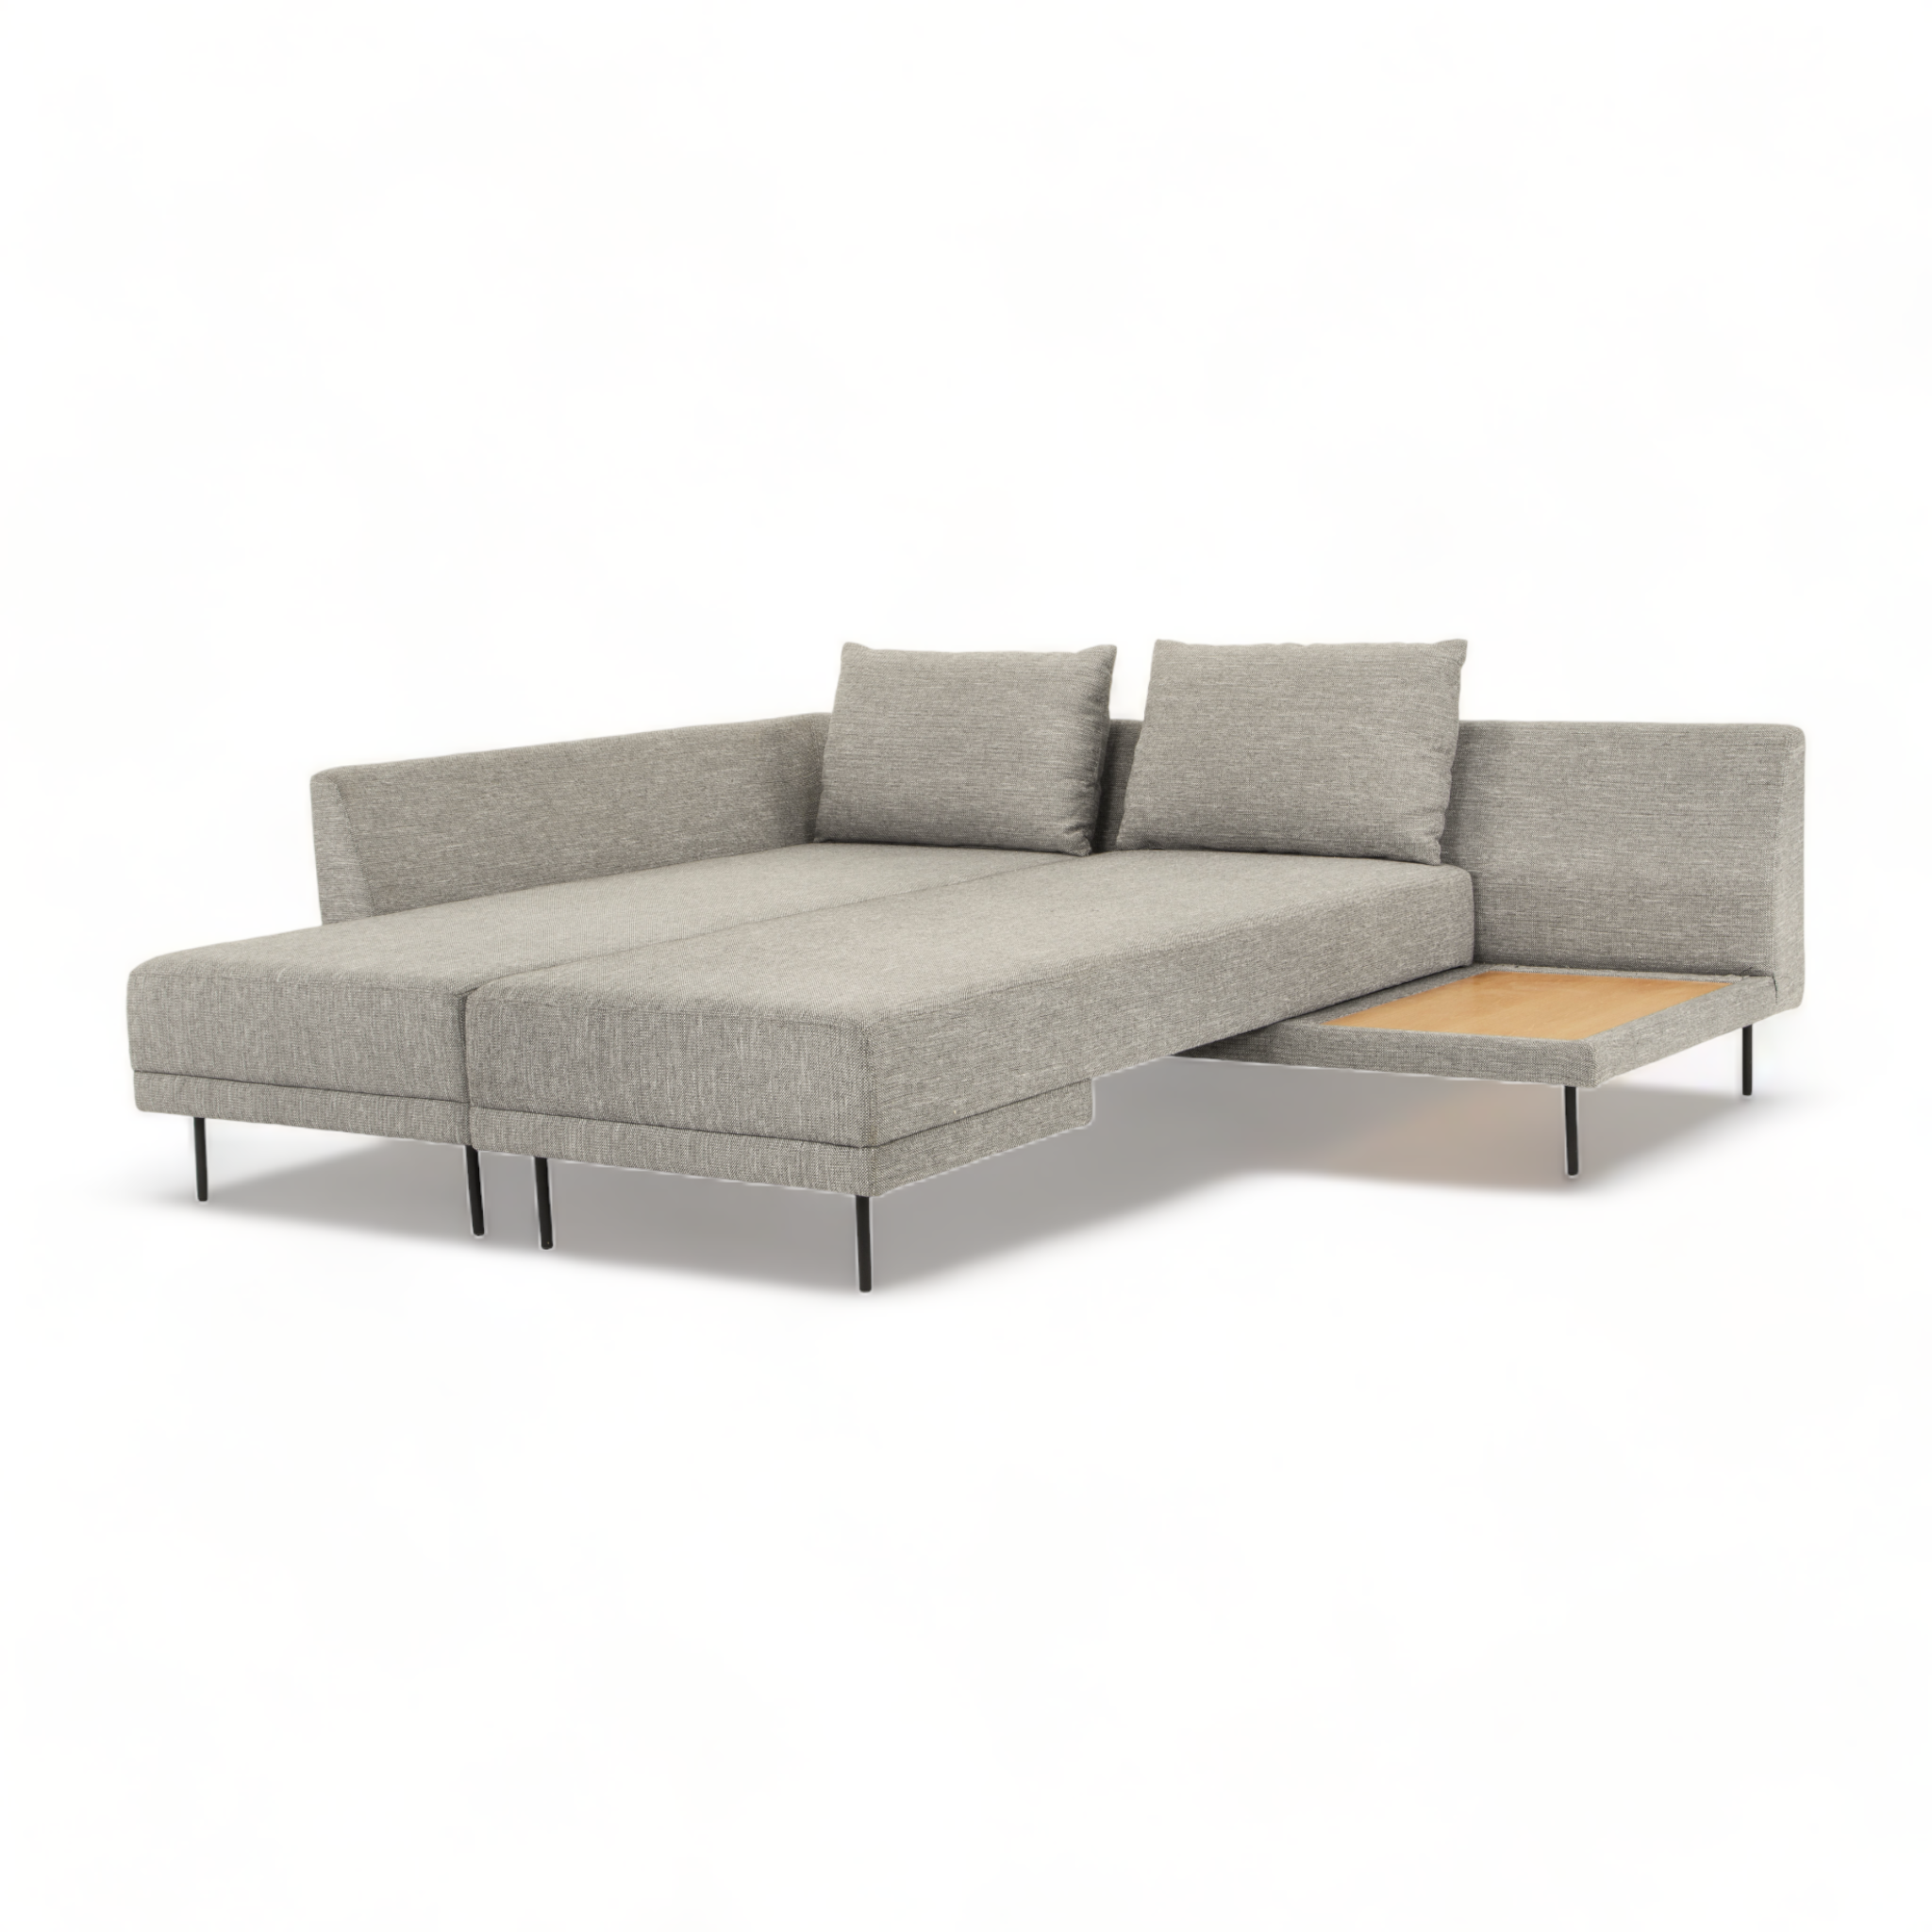 Doolin Sleeper Grey-Taupe Sofa Bed